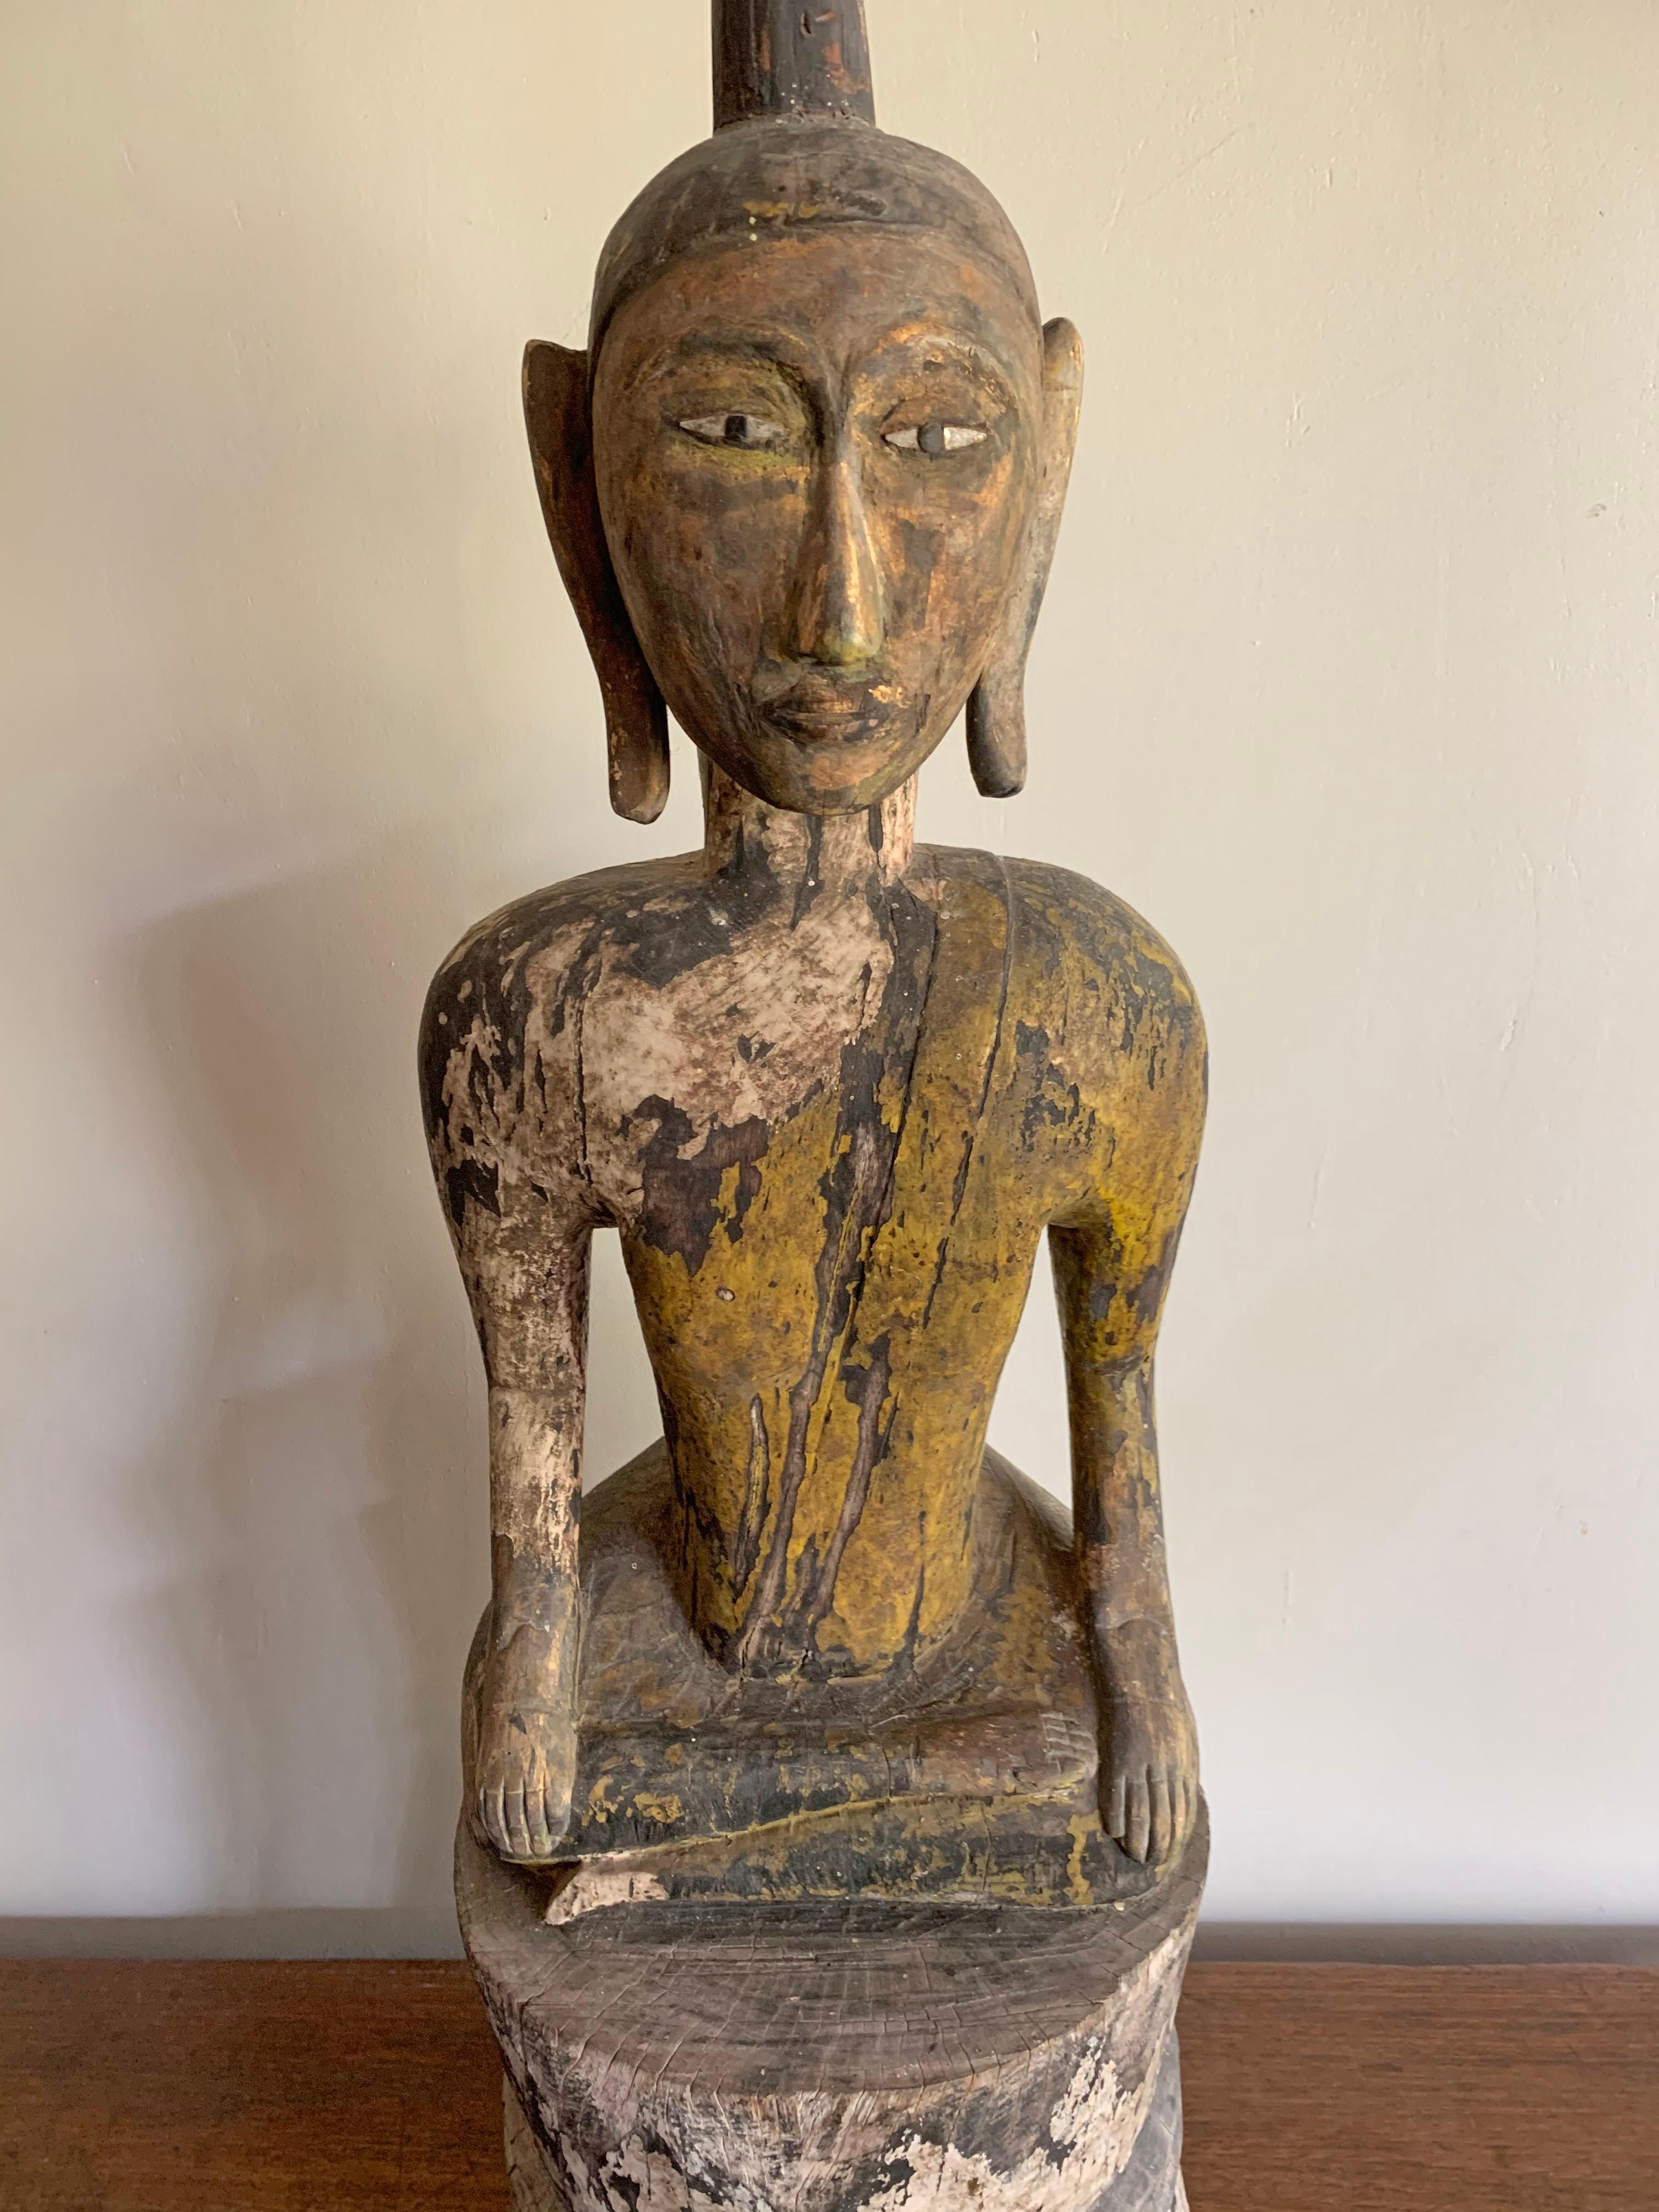 Ce bouddha est sculpté à la main dans du bois et provient de Birmanie, l'actuel Myanmar. Il présentait autrefois une finition laquée élaborée, mais celle-ci s'est en grande partie usée au fil des décennies. Il reste des traces de la laque noire et